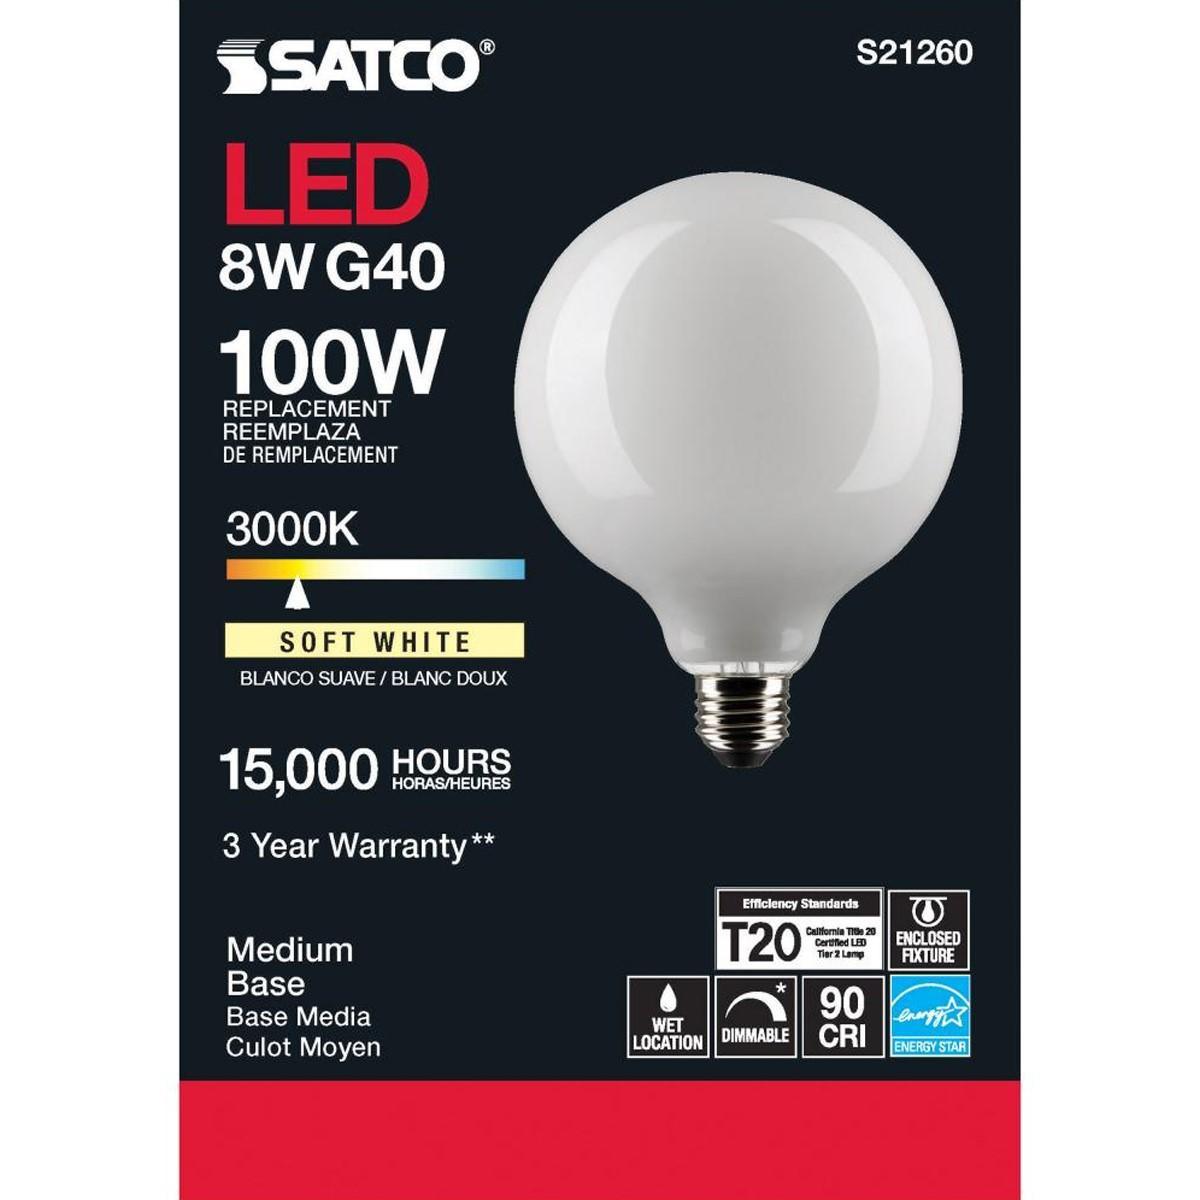 G40 LED Globe Bulb, 8 Watt, 800 Lumens, 3000K, E26 Medium Base, Frosted Finish - Bees Lighting